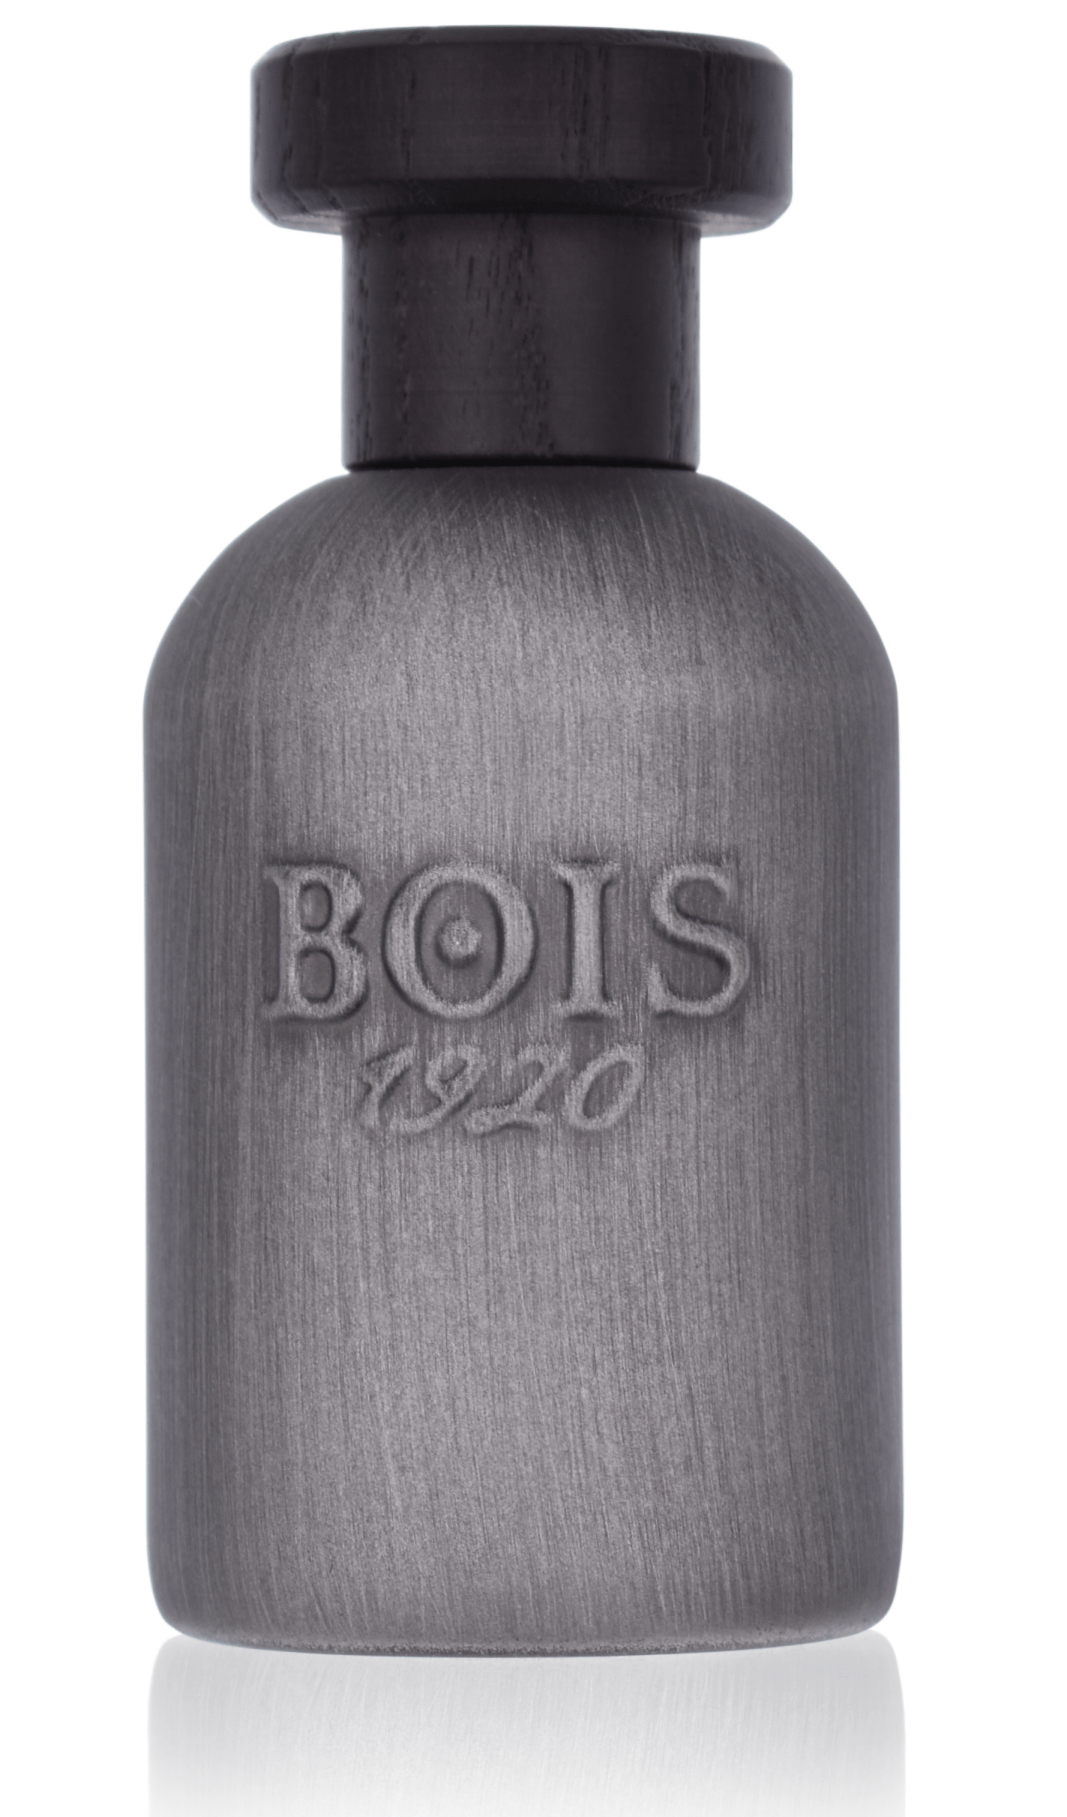 Bois 1920 - Scuro Parfum 100 ml  